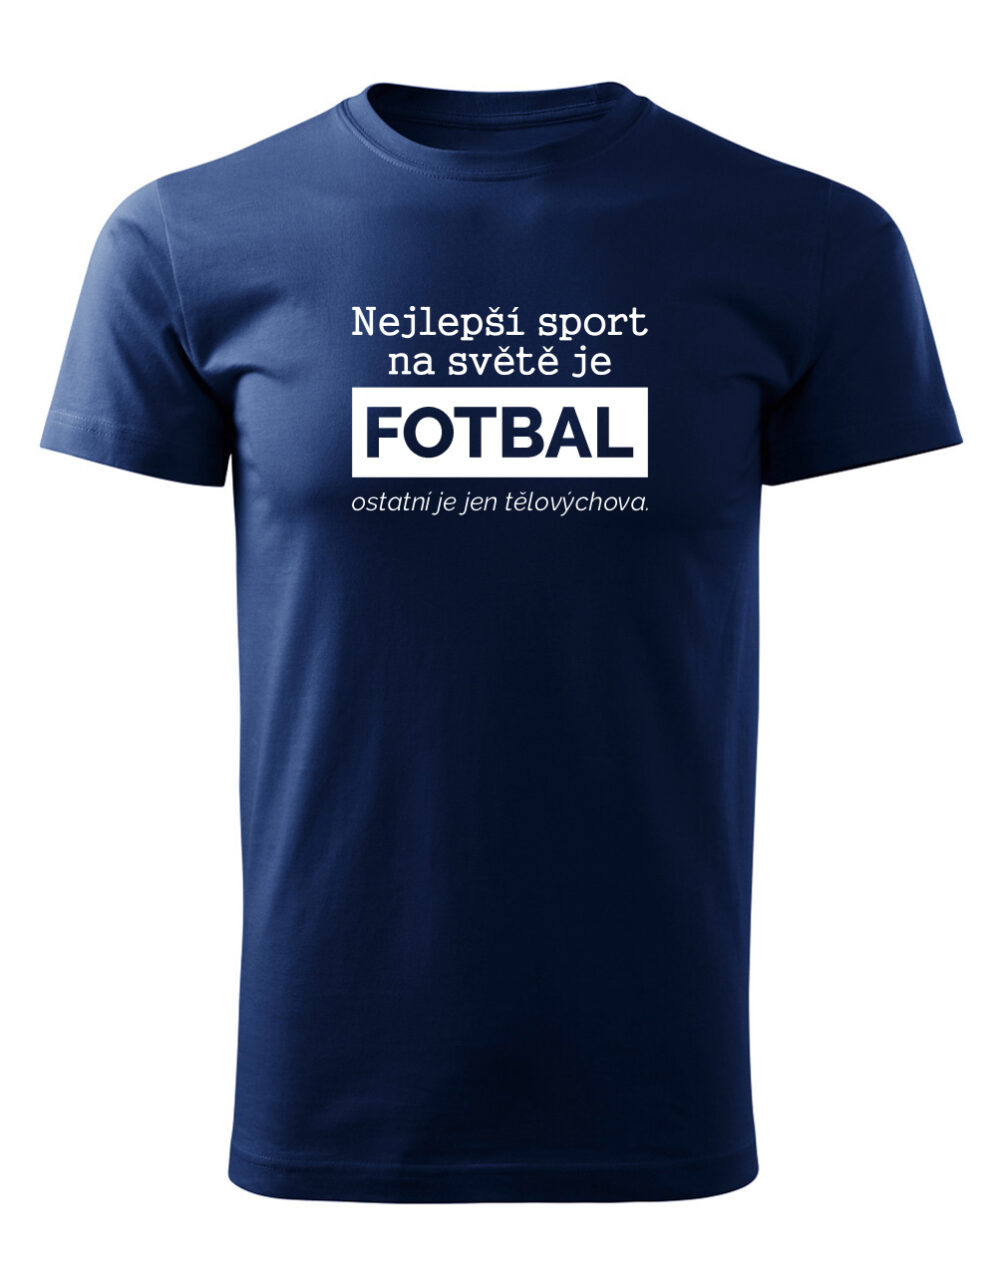 Pánské tričko s potiskem Nejlepší sport je fotbal námořnická modrá